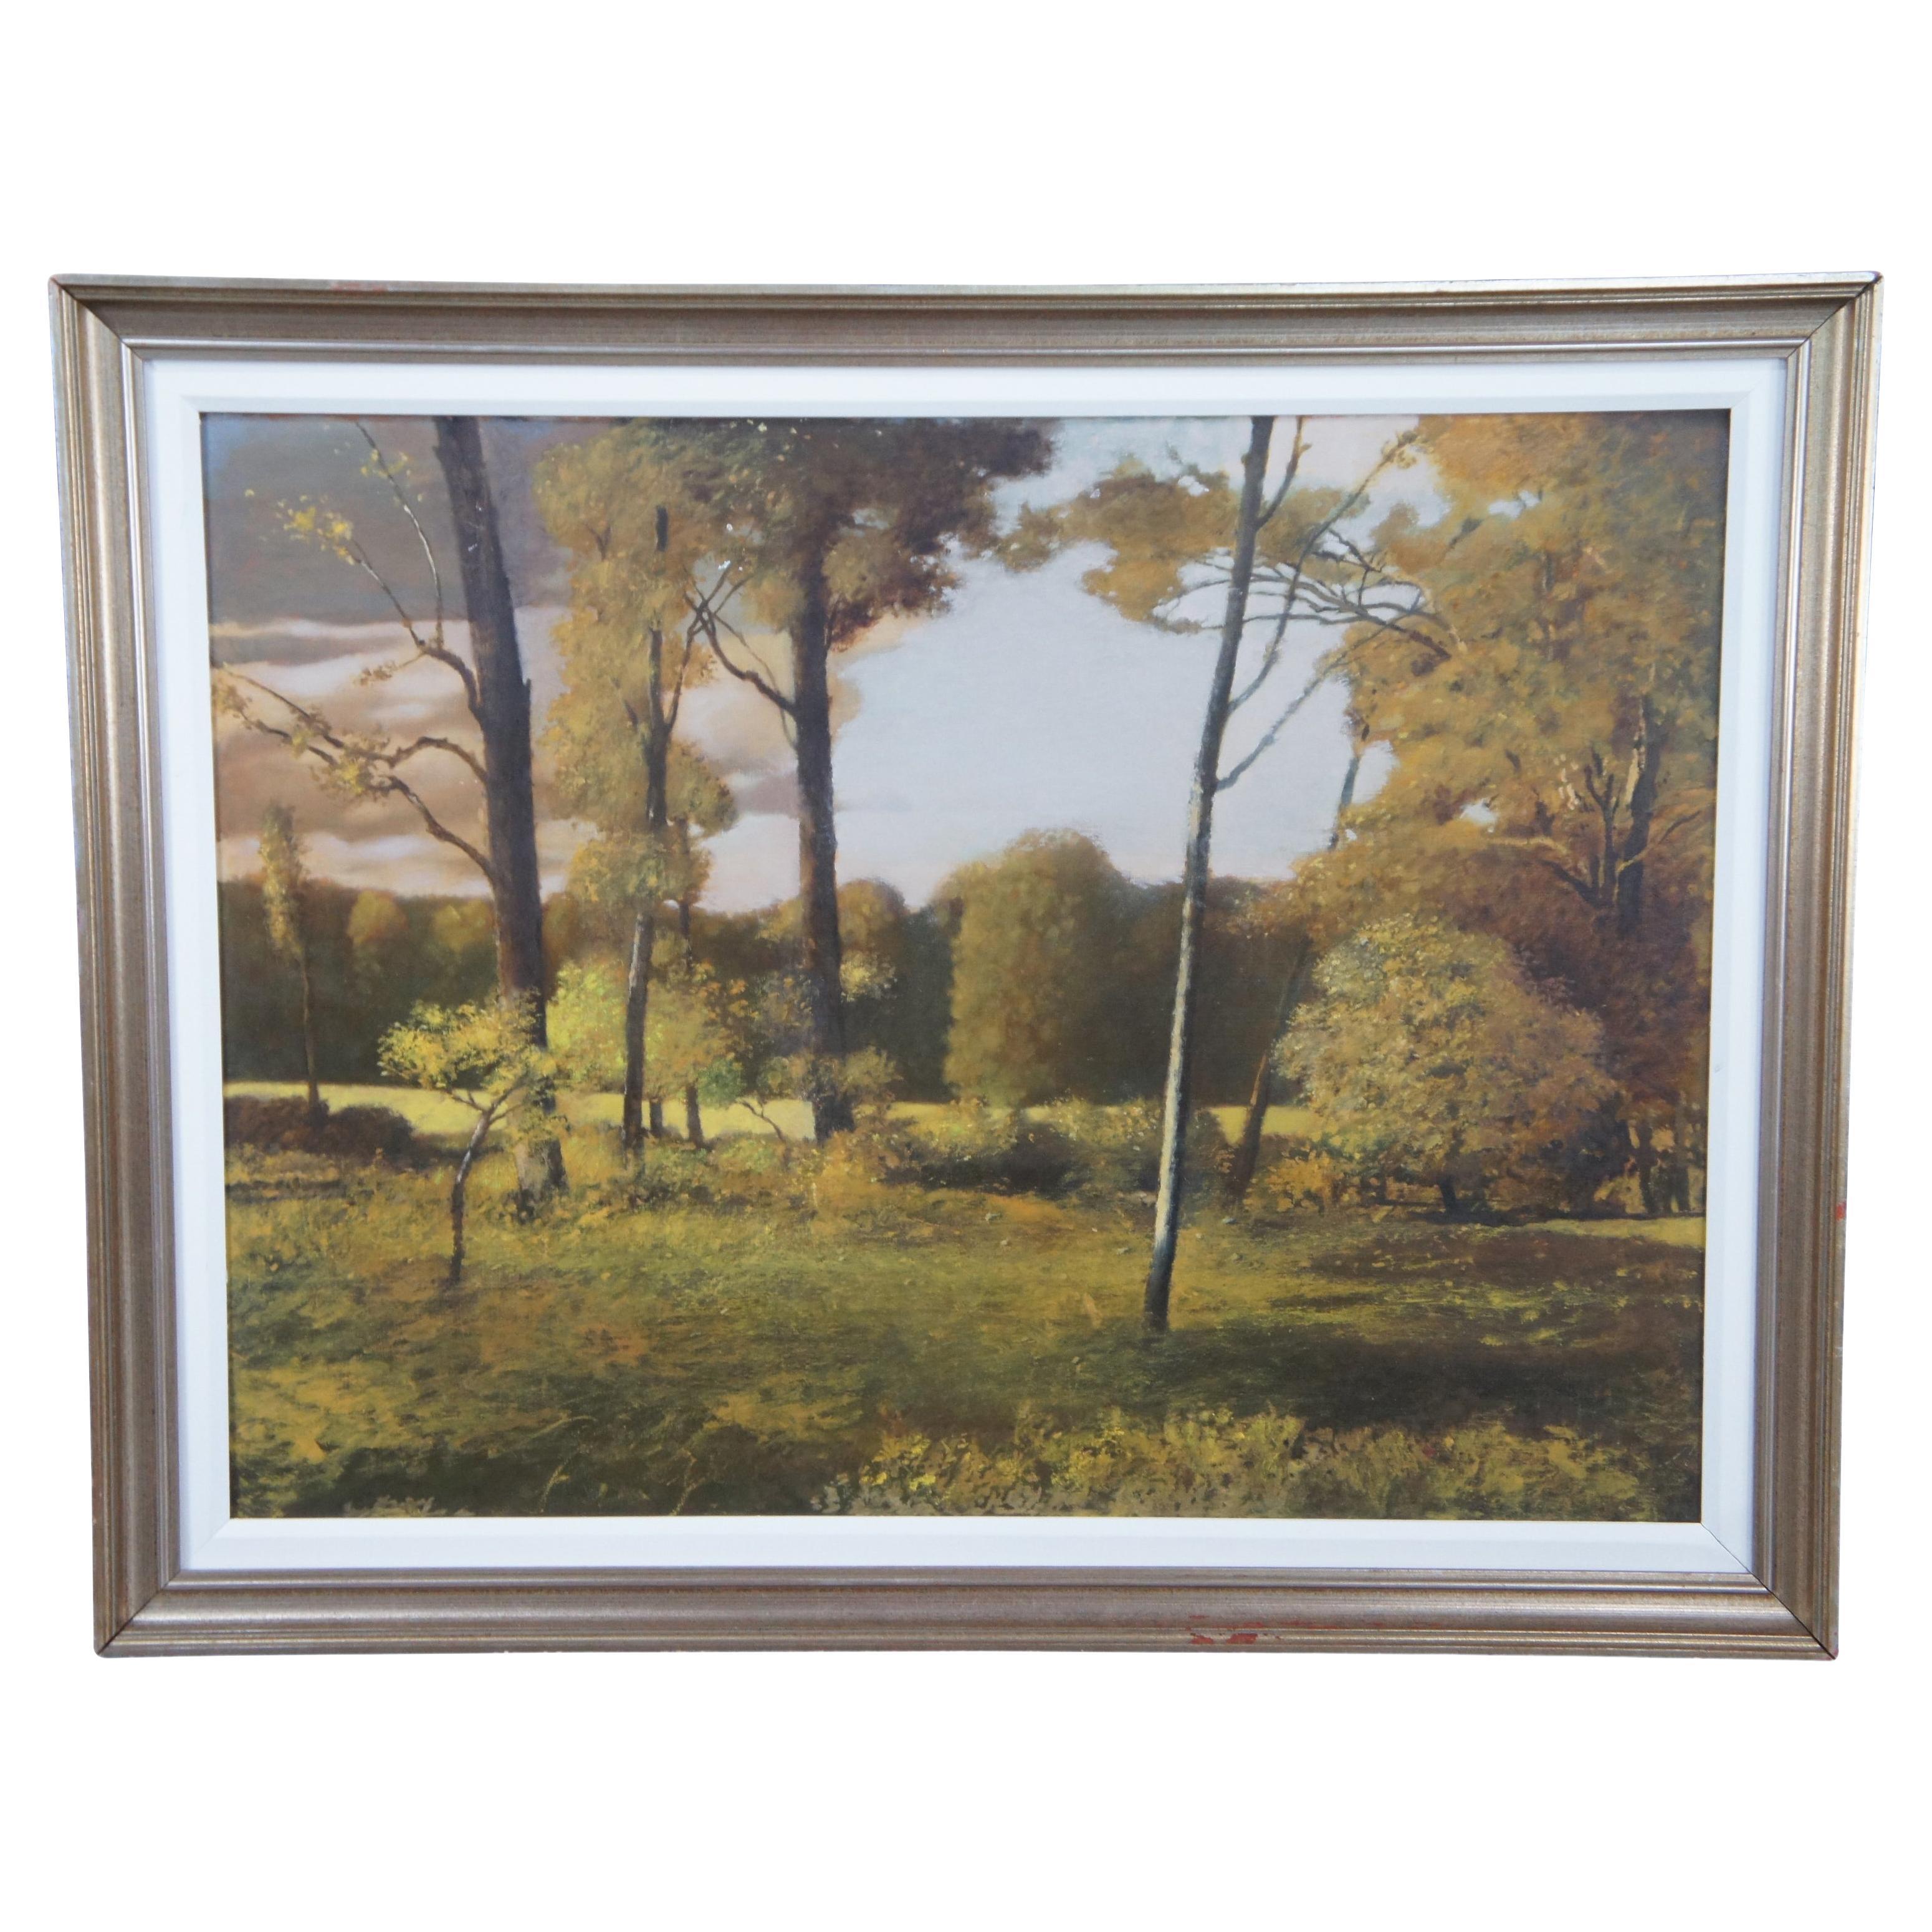 Ronald E. Renmark - Peinture à l'huile sur toile - Paysage de forêt avec arbres - 46"